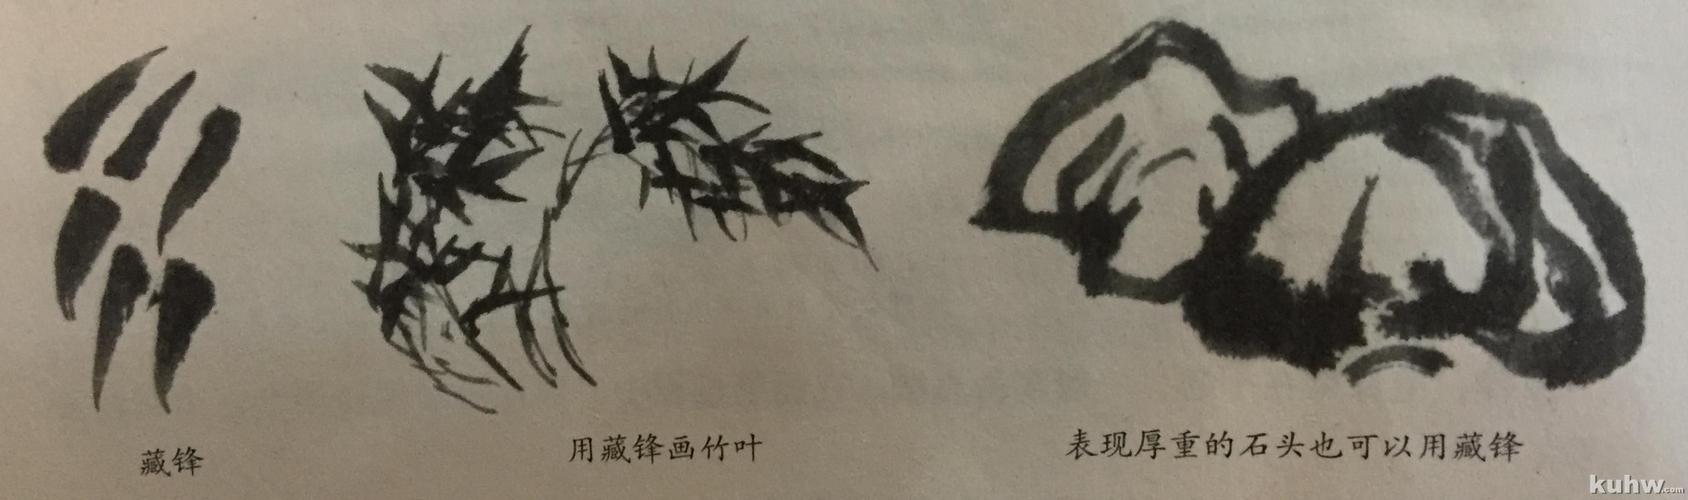 中国画4种基本笔法 中国画4种基本笔法演示